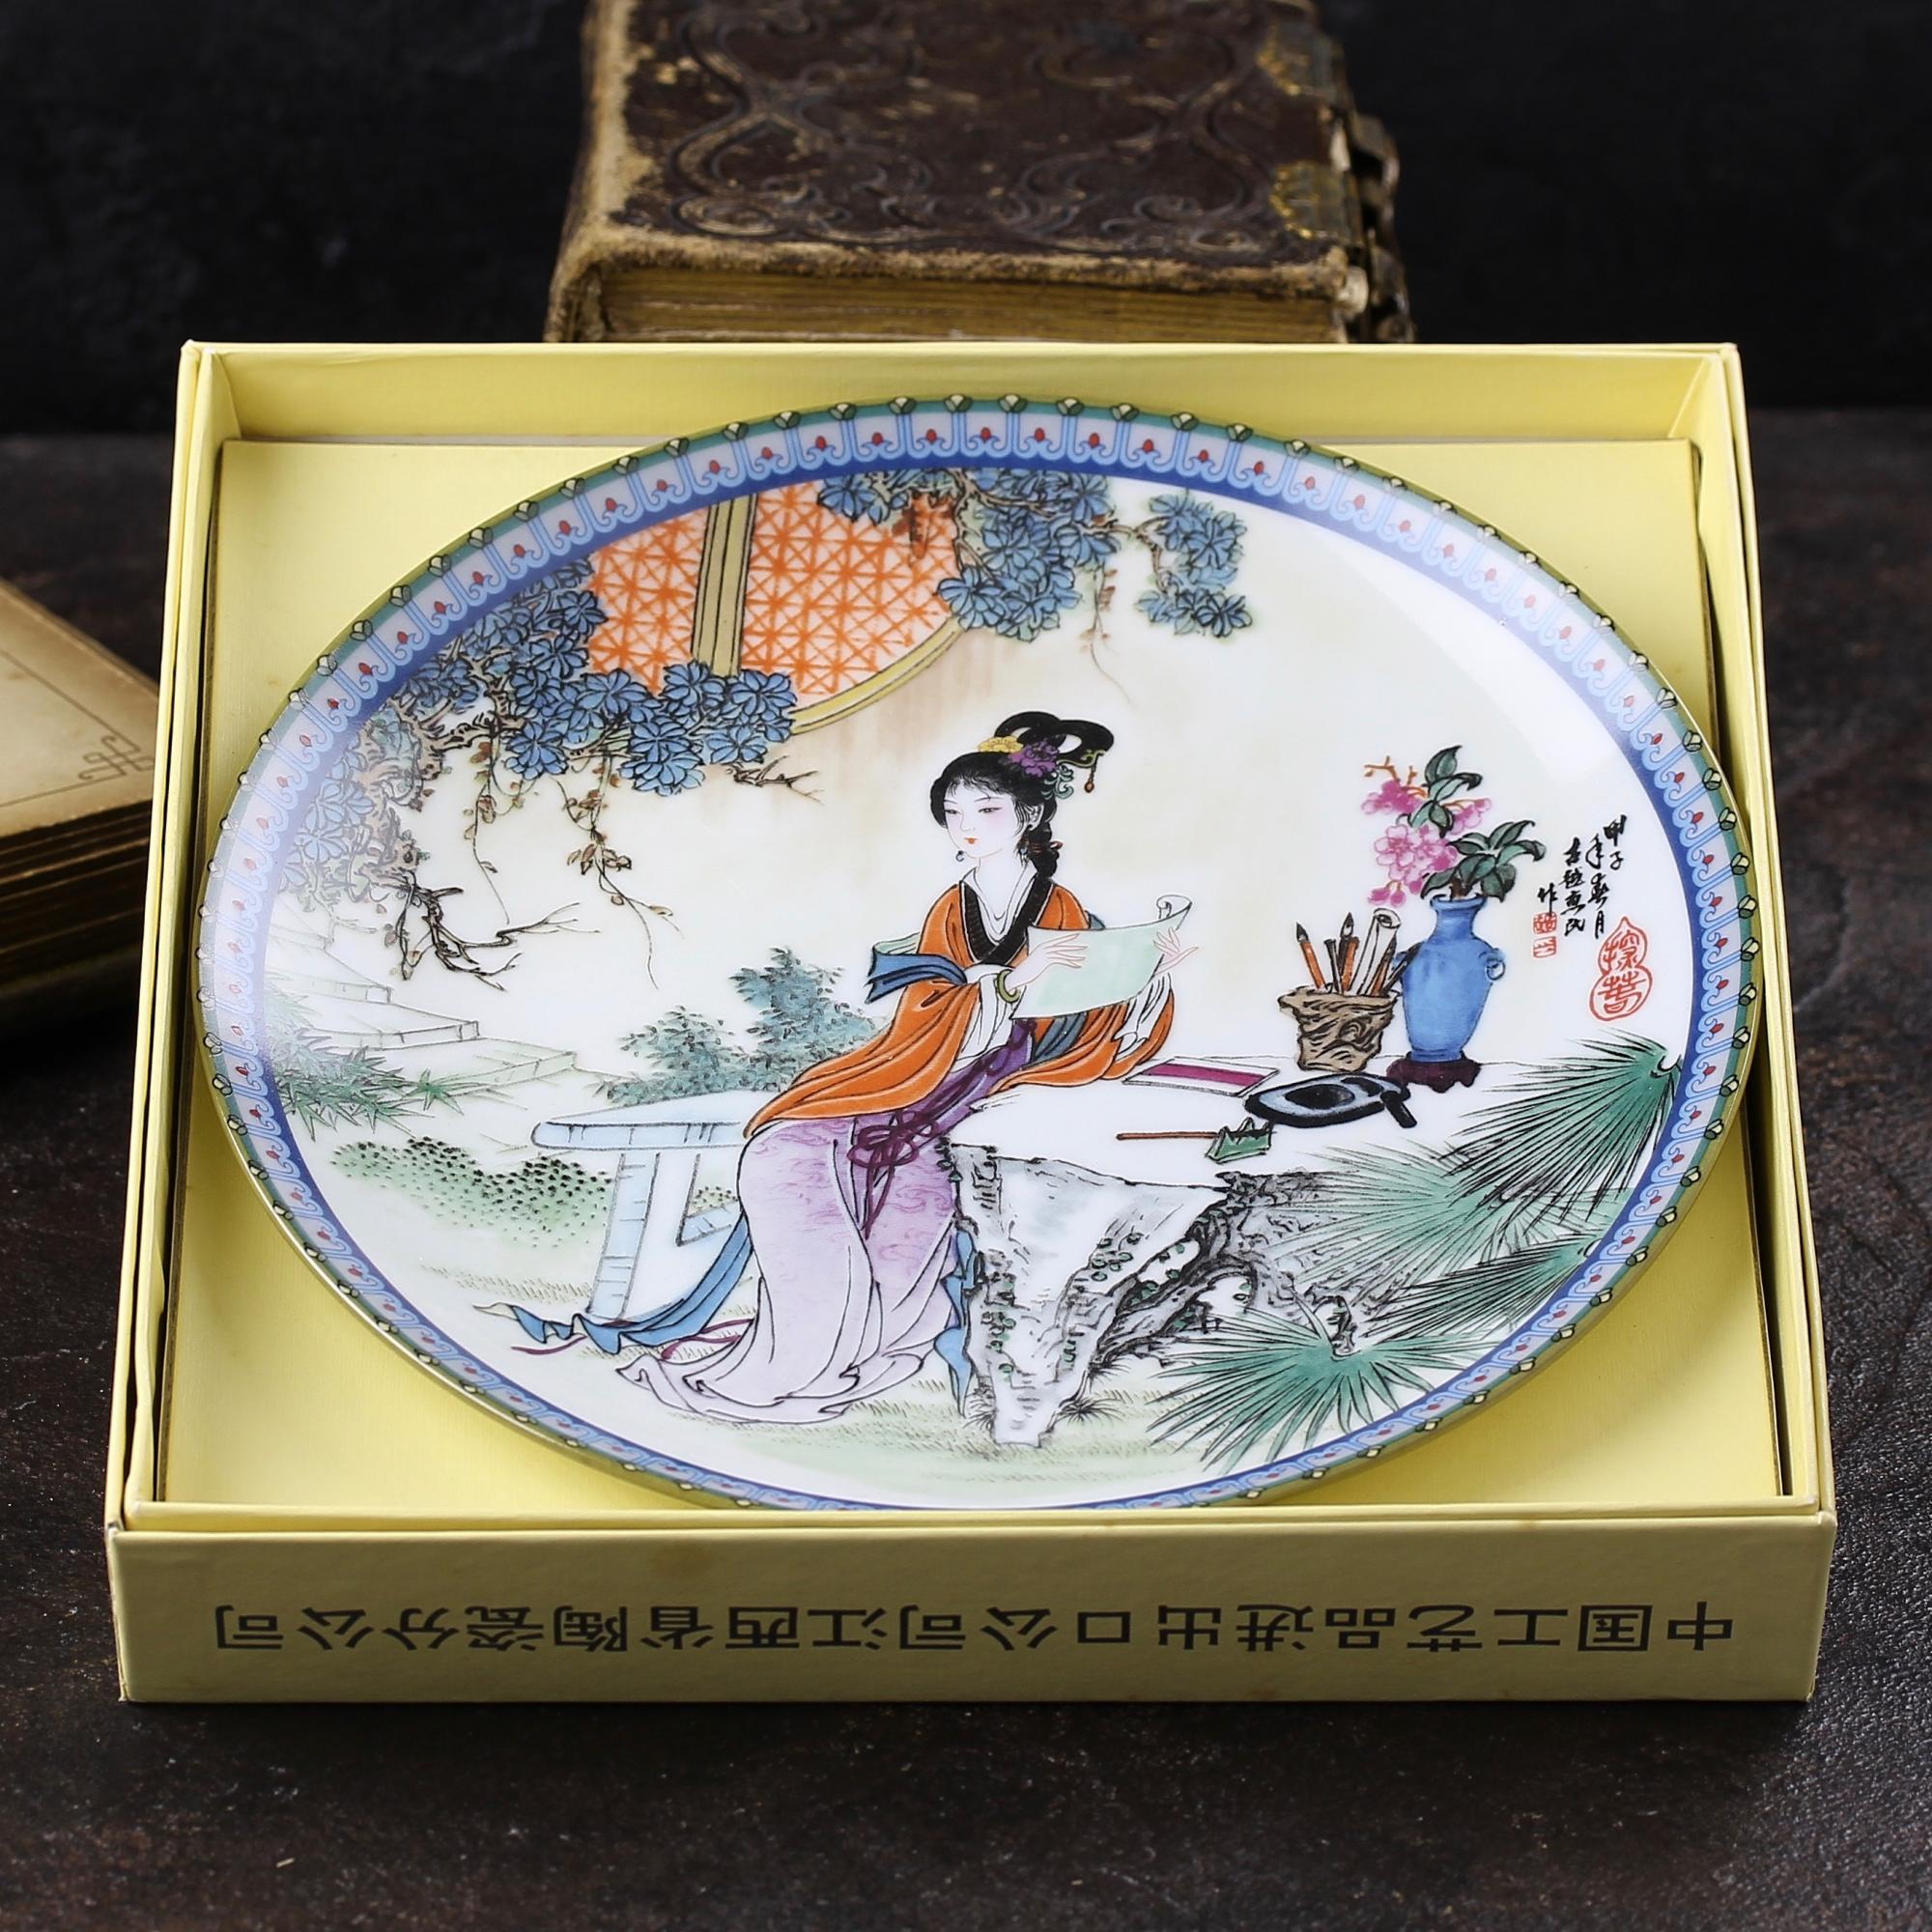 Винтажная декоративная тарелка Imperial Jingdezhen "Tan-chun" Коробка, сертификат